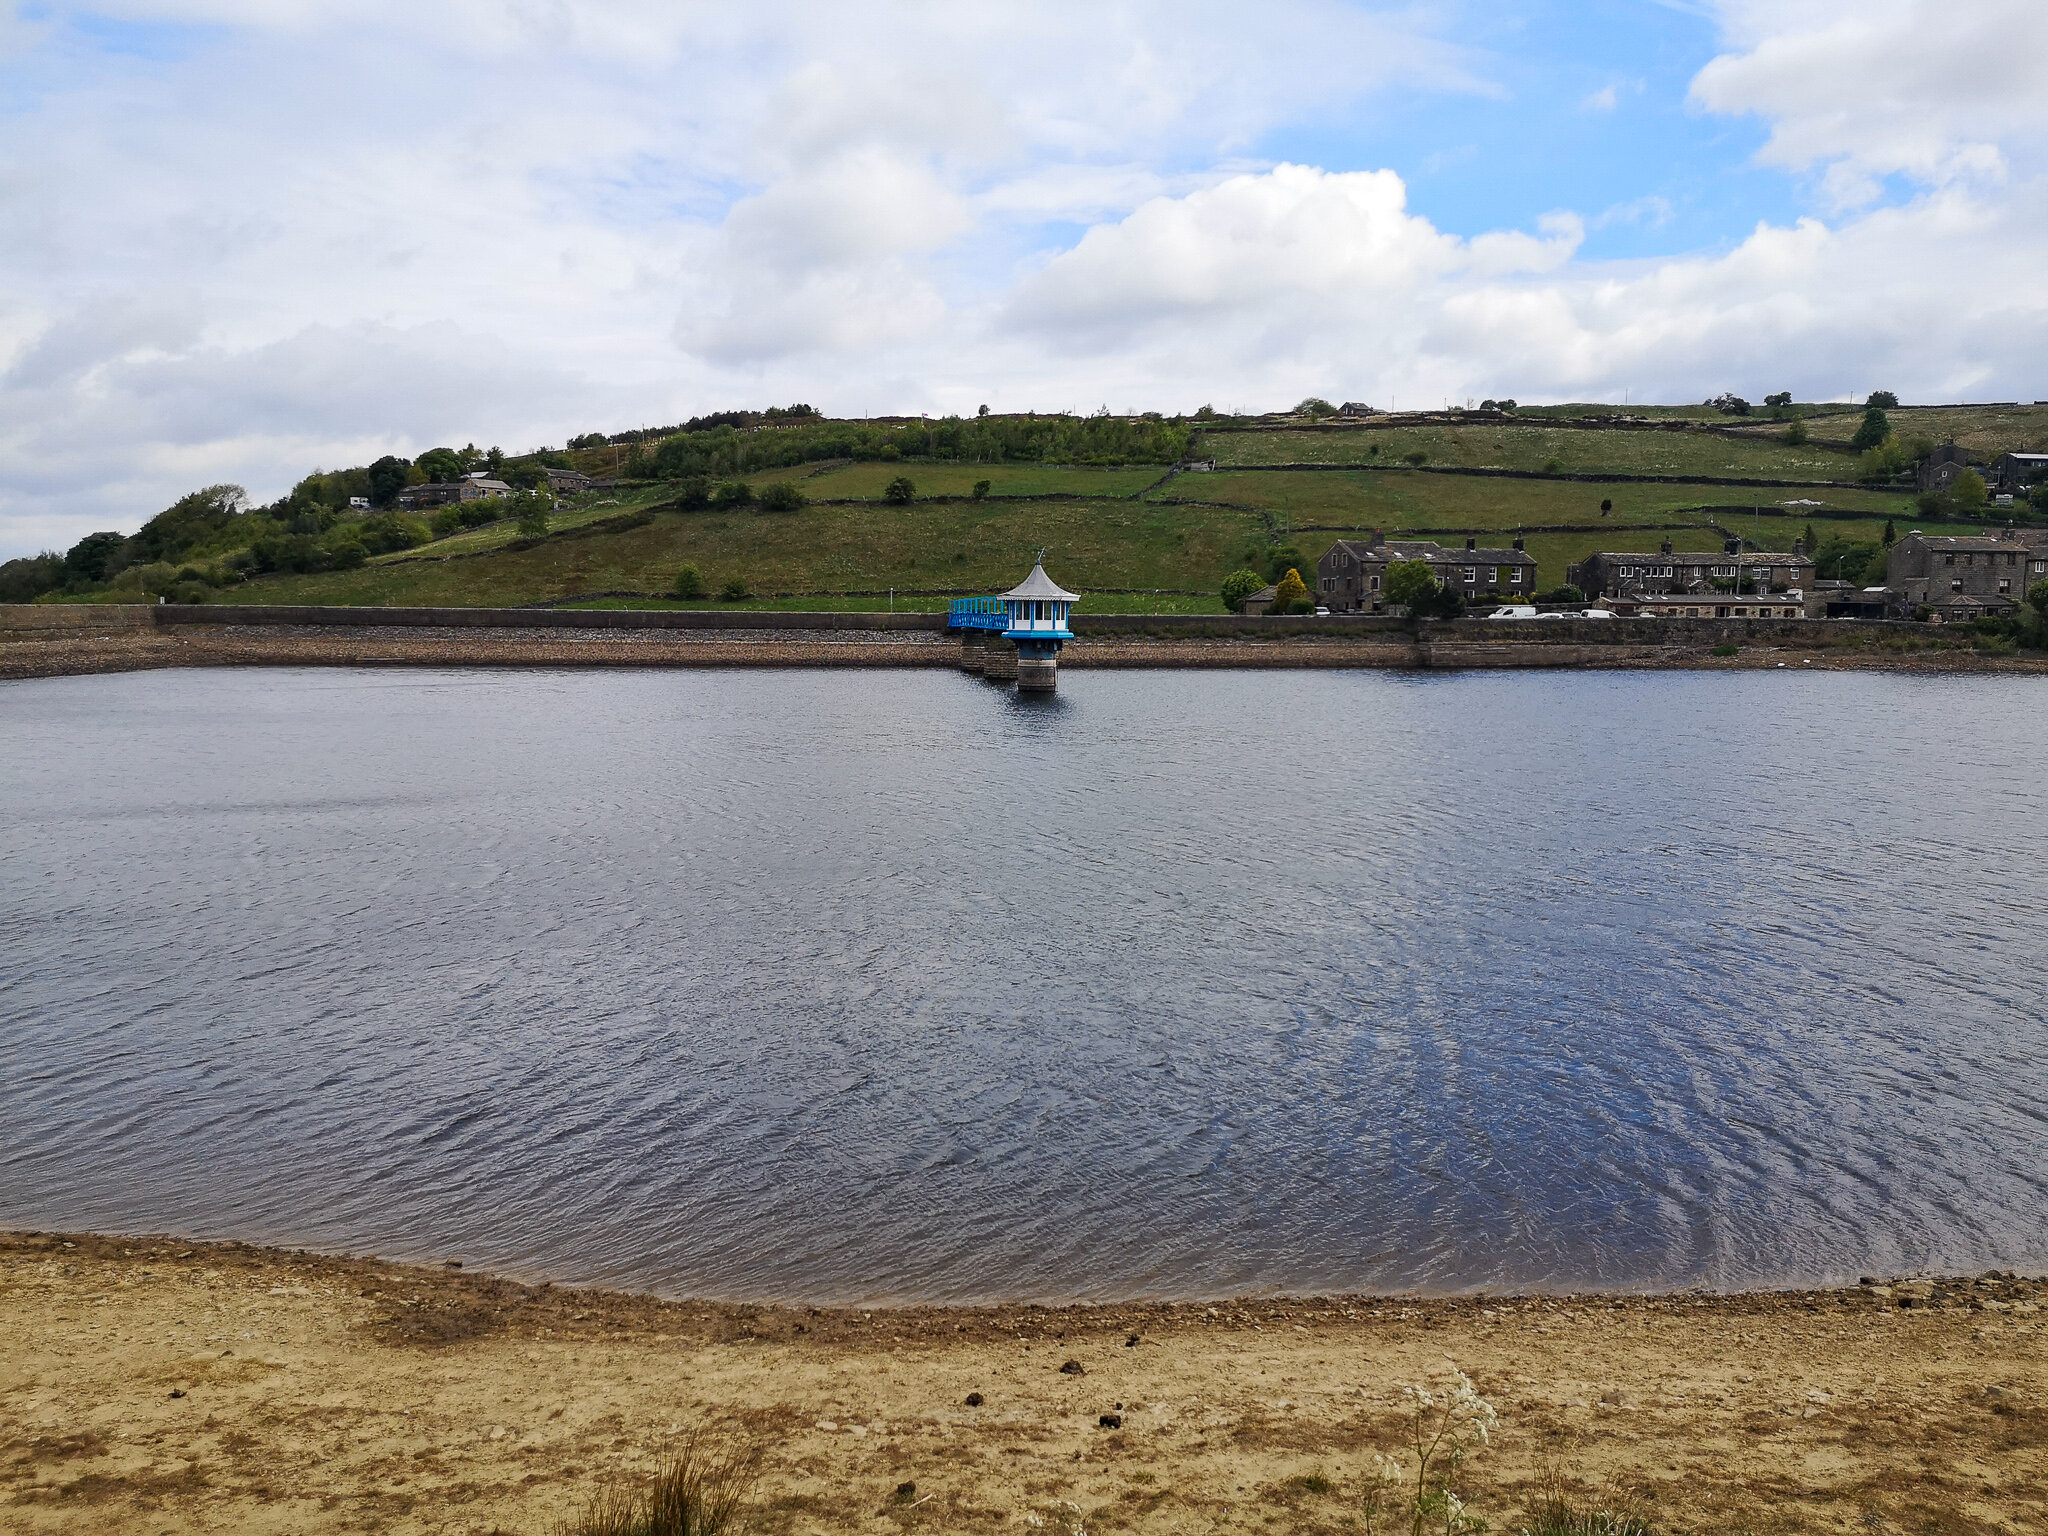  Leeming reservoir  